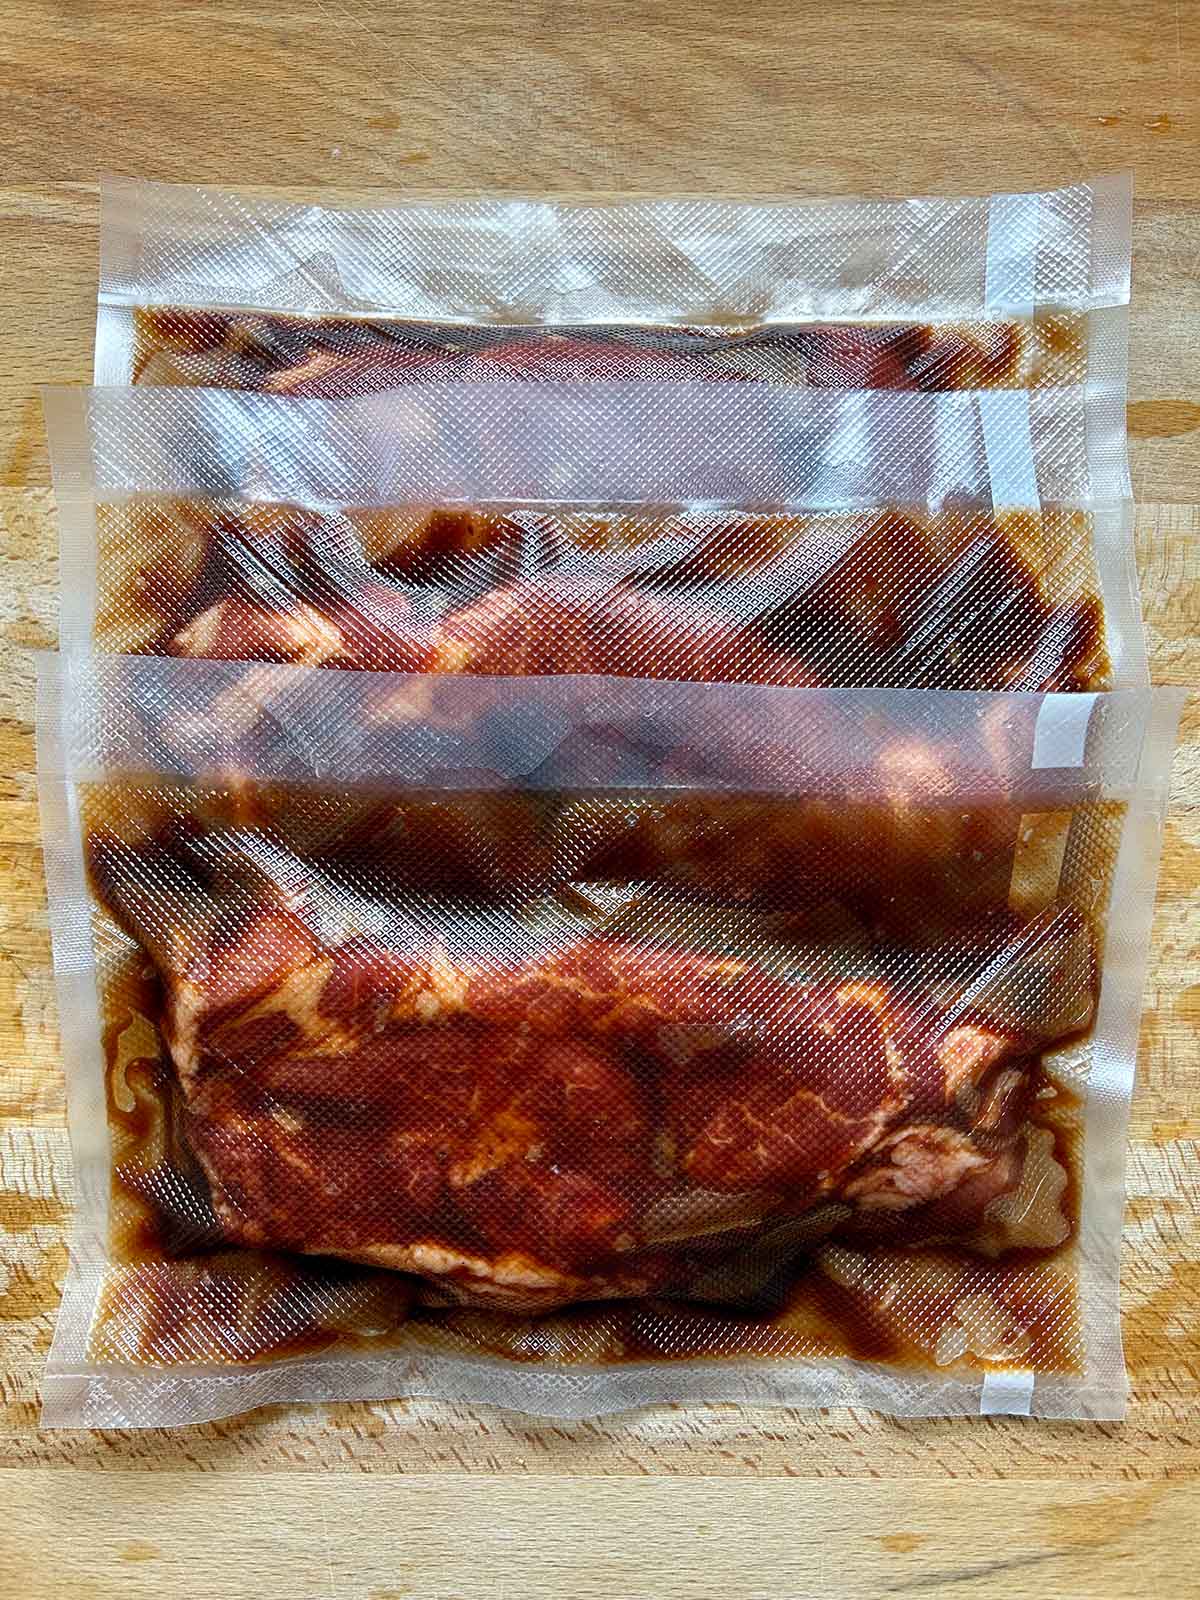 pork shoulder strips in sous vide bags